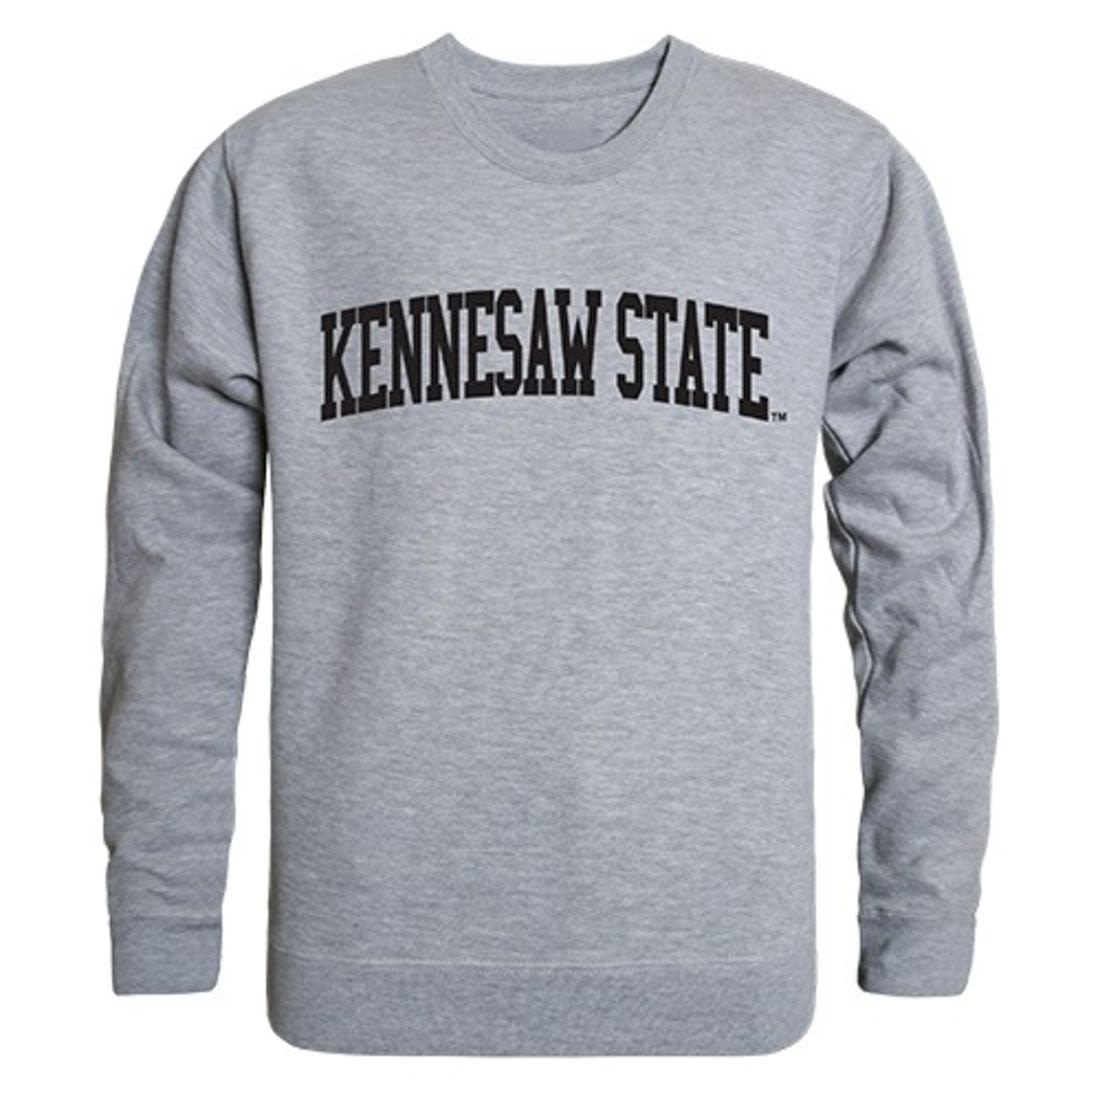 KSU Kennesaw State University Game Day Crewneck Pullover Sweatshirt Sweater Heather Grey-Campus-Wardrobe